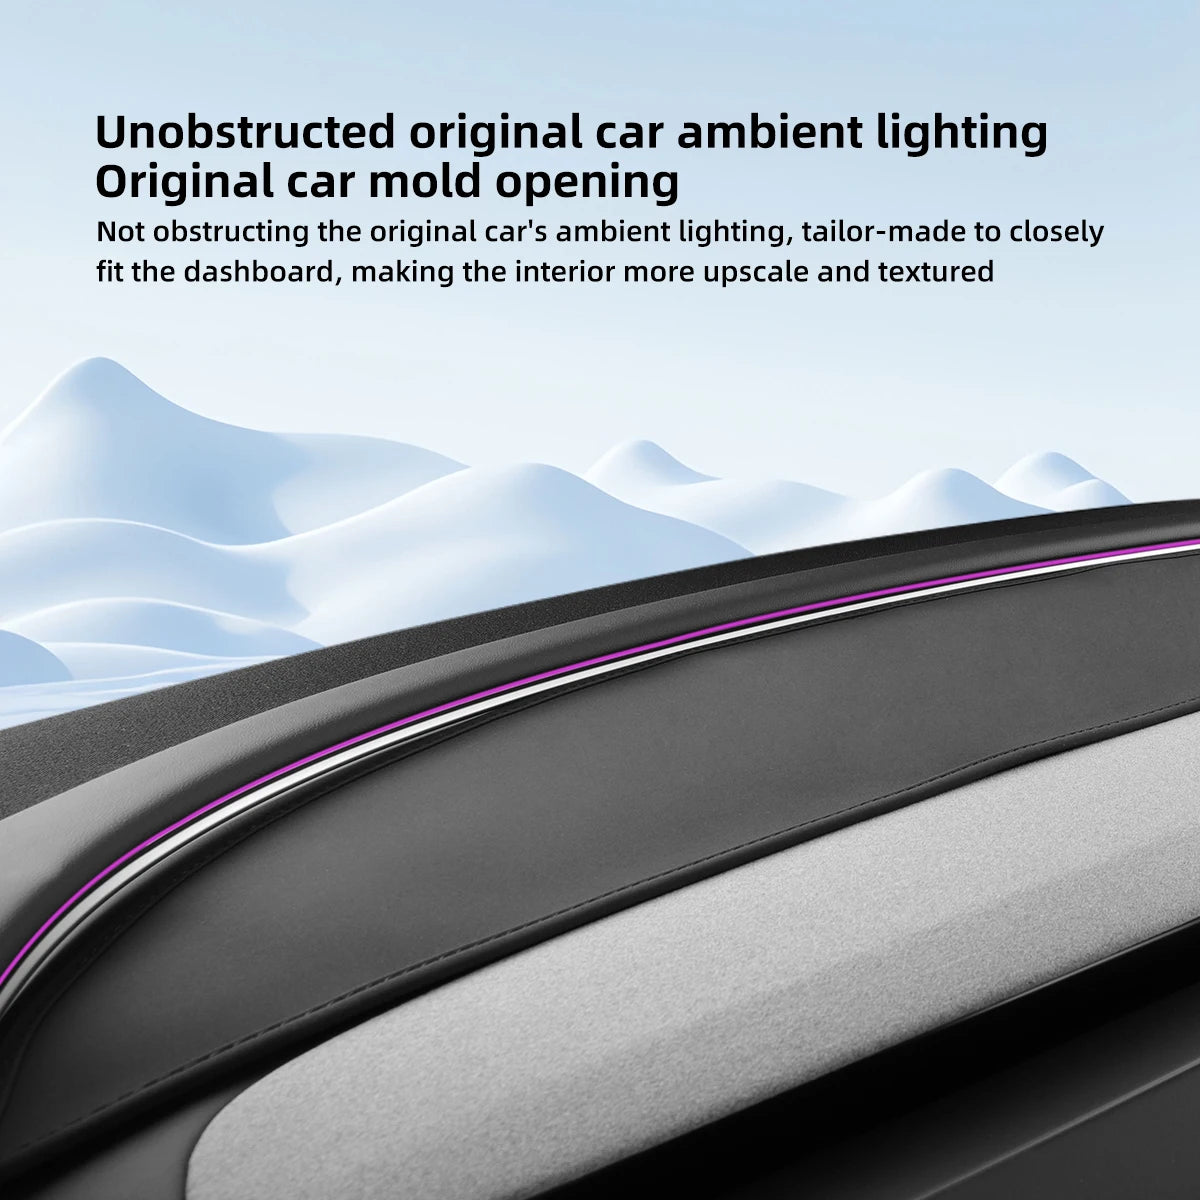 Dashboard Mat for Tesla Model 3 Highland